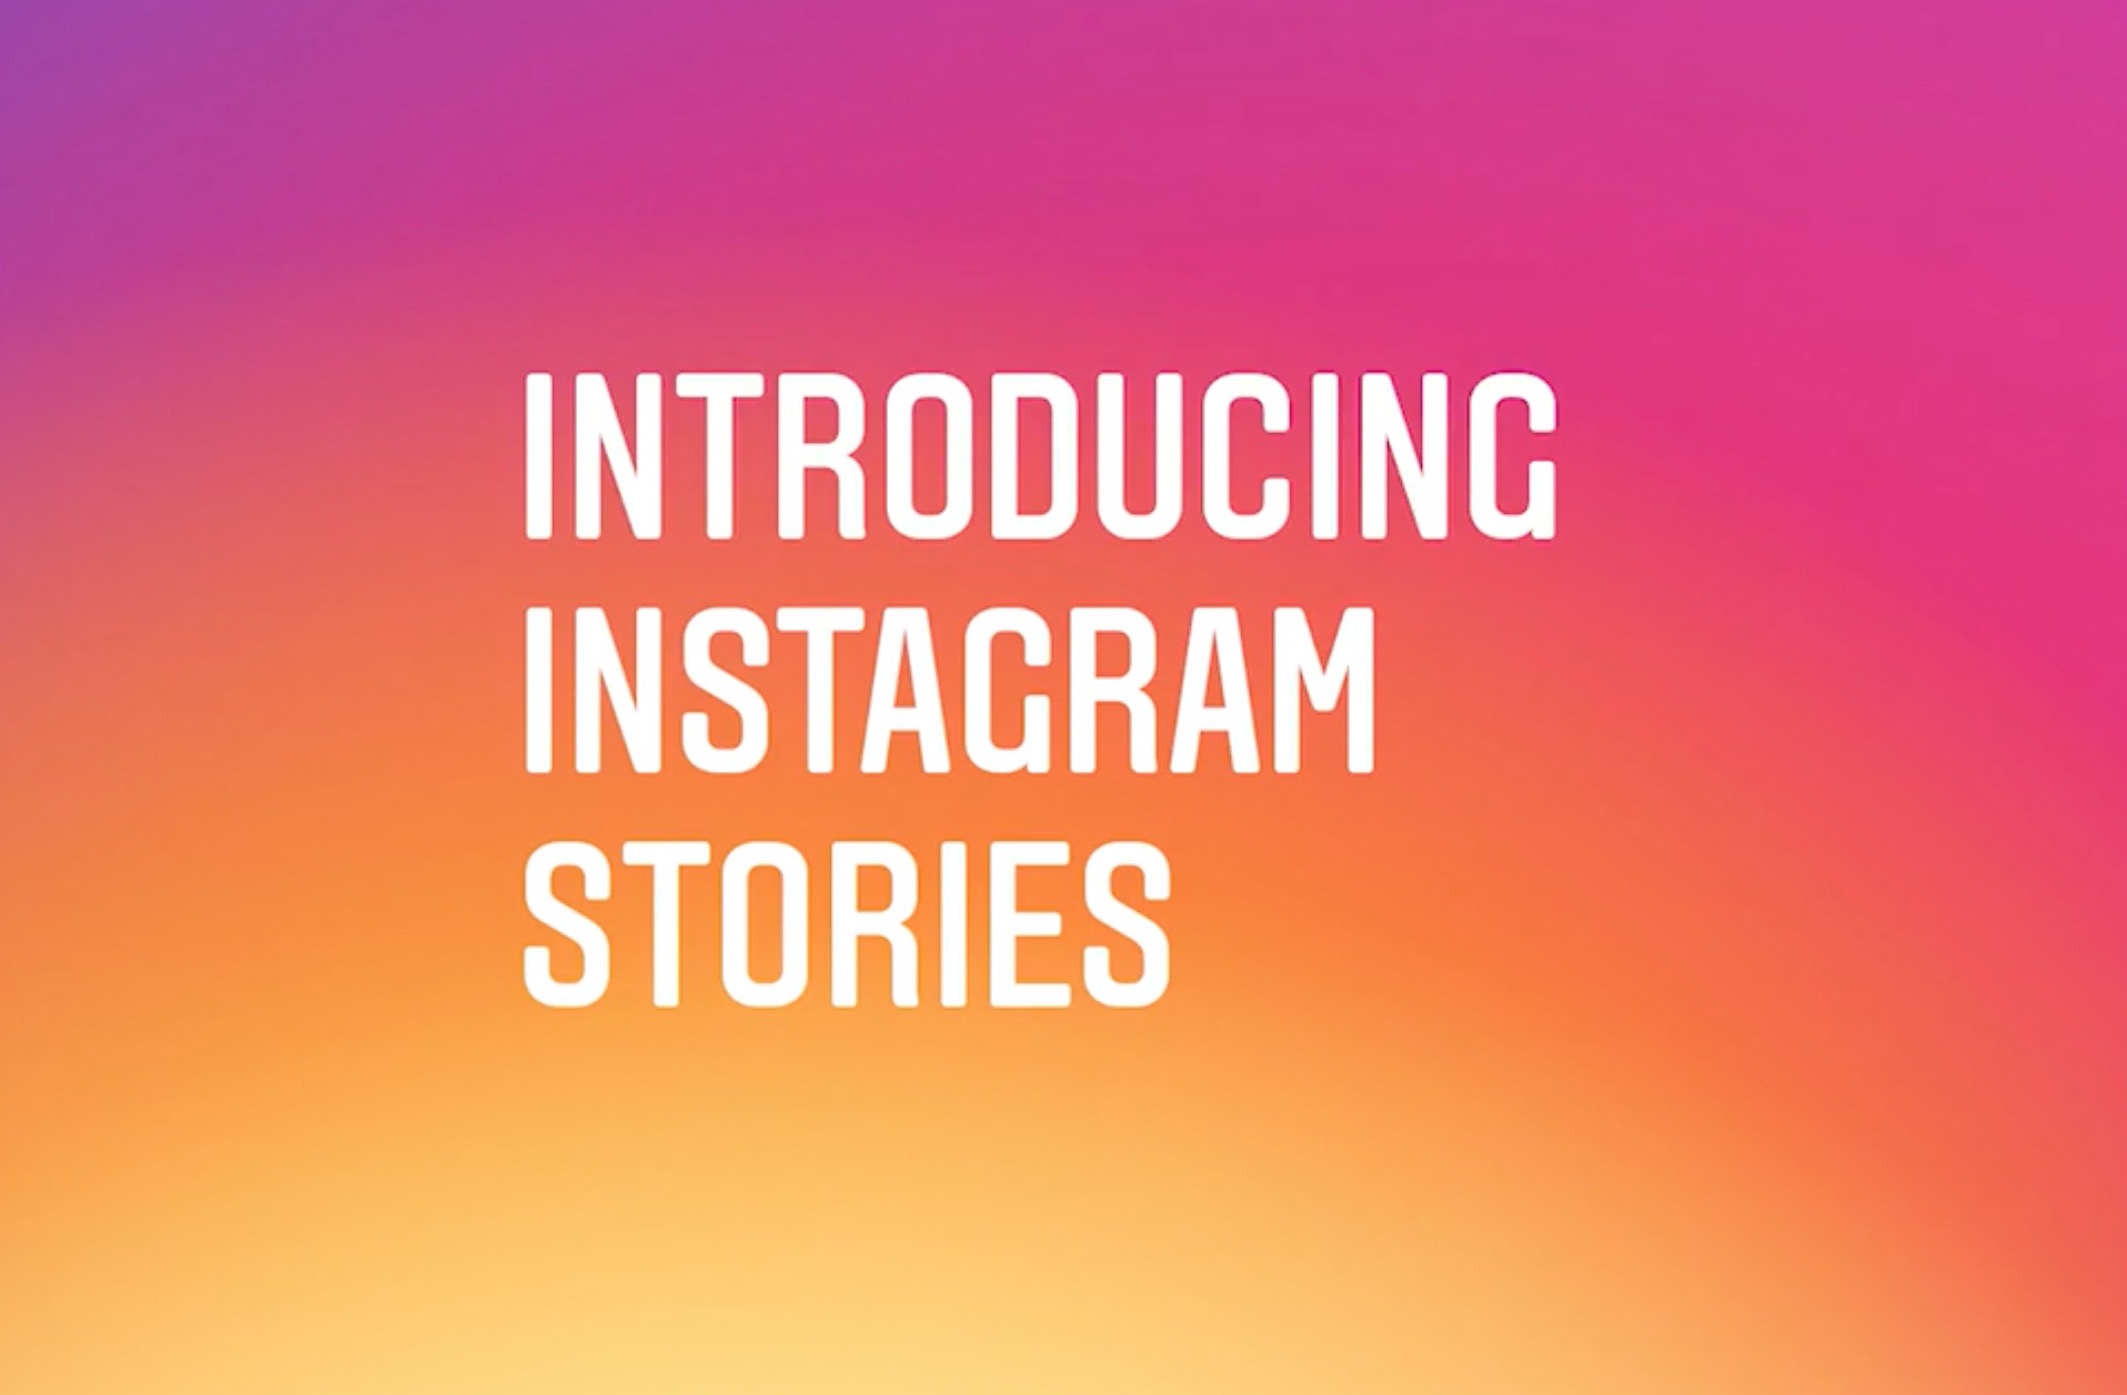 インスタグラム、新機能「Stories」を発表。24時間限定で写真と動画をシェア